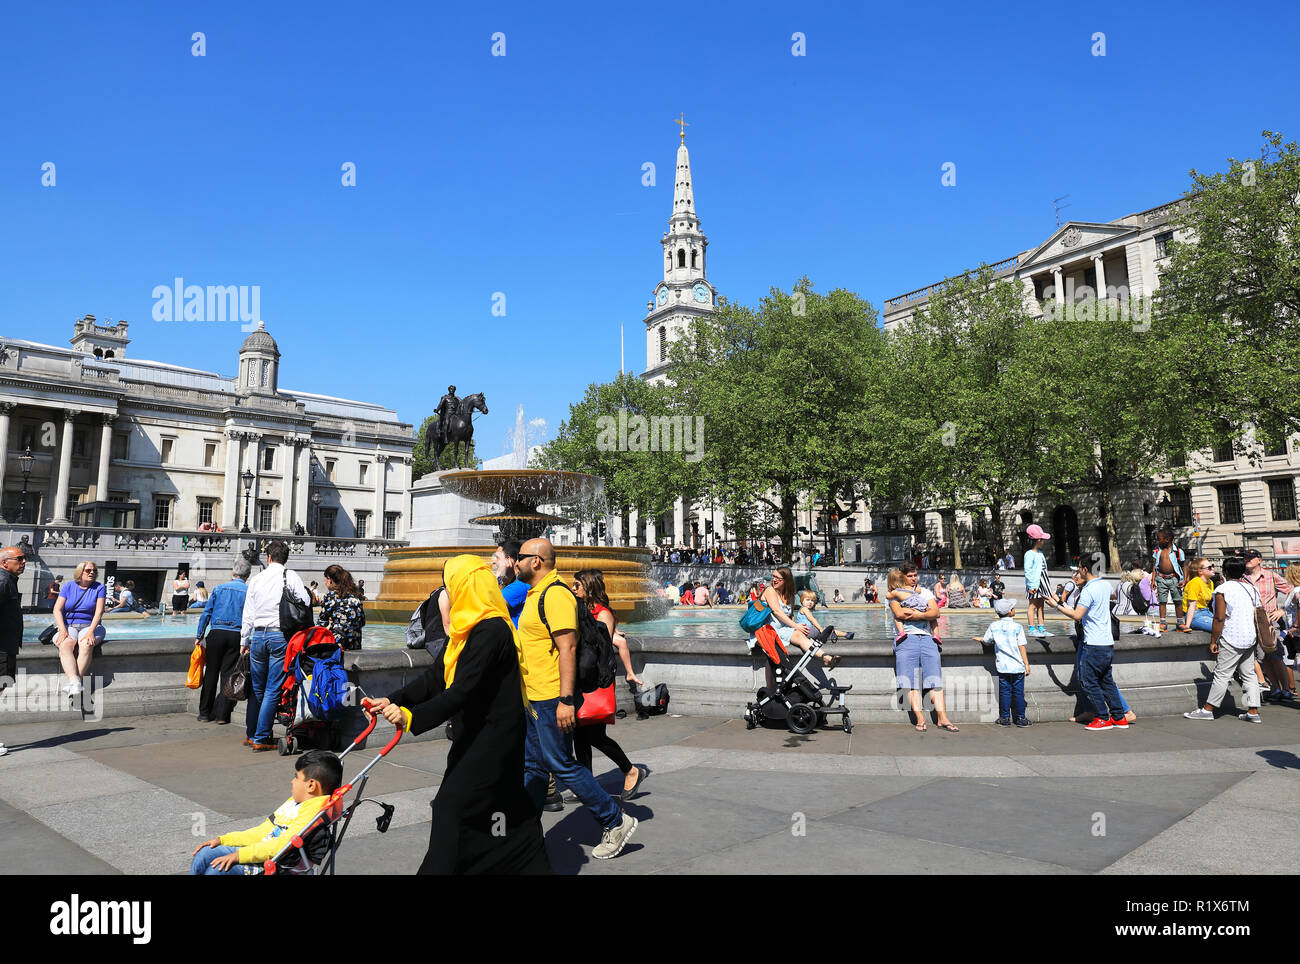 La diversità dei visitatori di Trafalgar Square, nel centro di Londra, Regno Unito Foto Stock